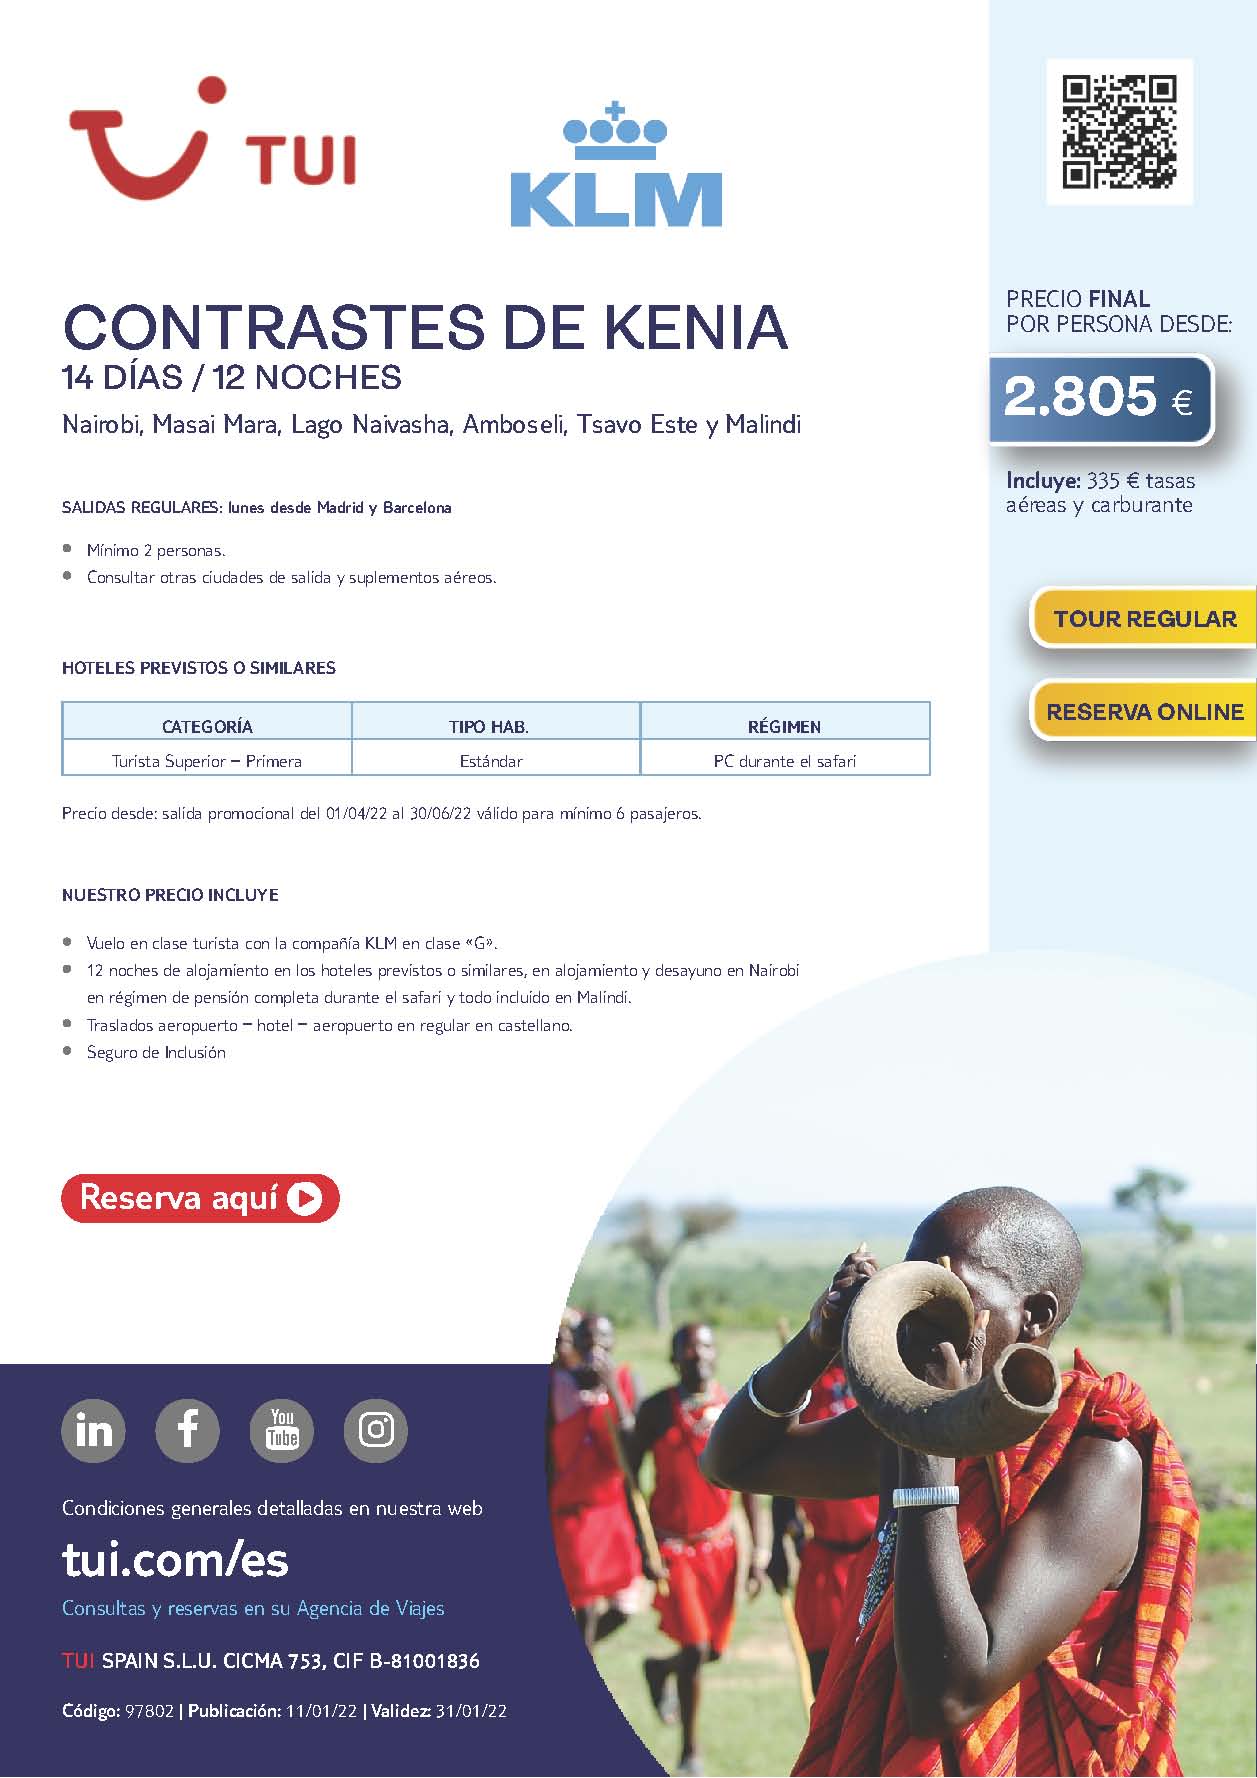 Oferta TUI Contrastes de Kenia 14 dias Abril Mayo y Junio 2022 salidas desde Madrid y Barcelona